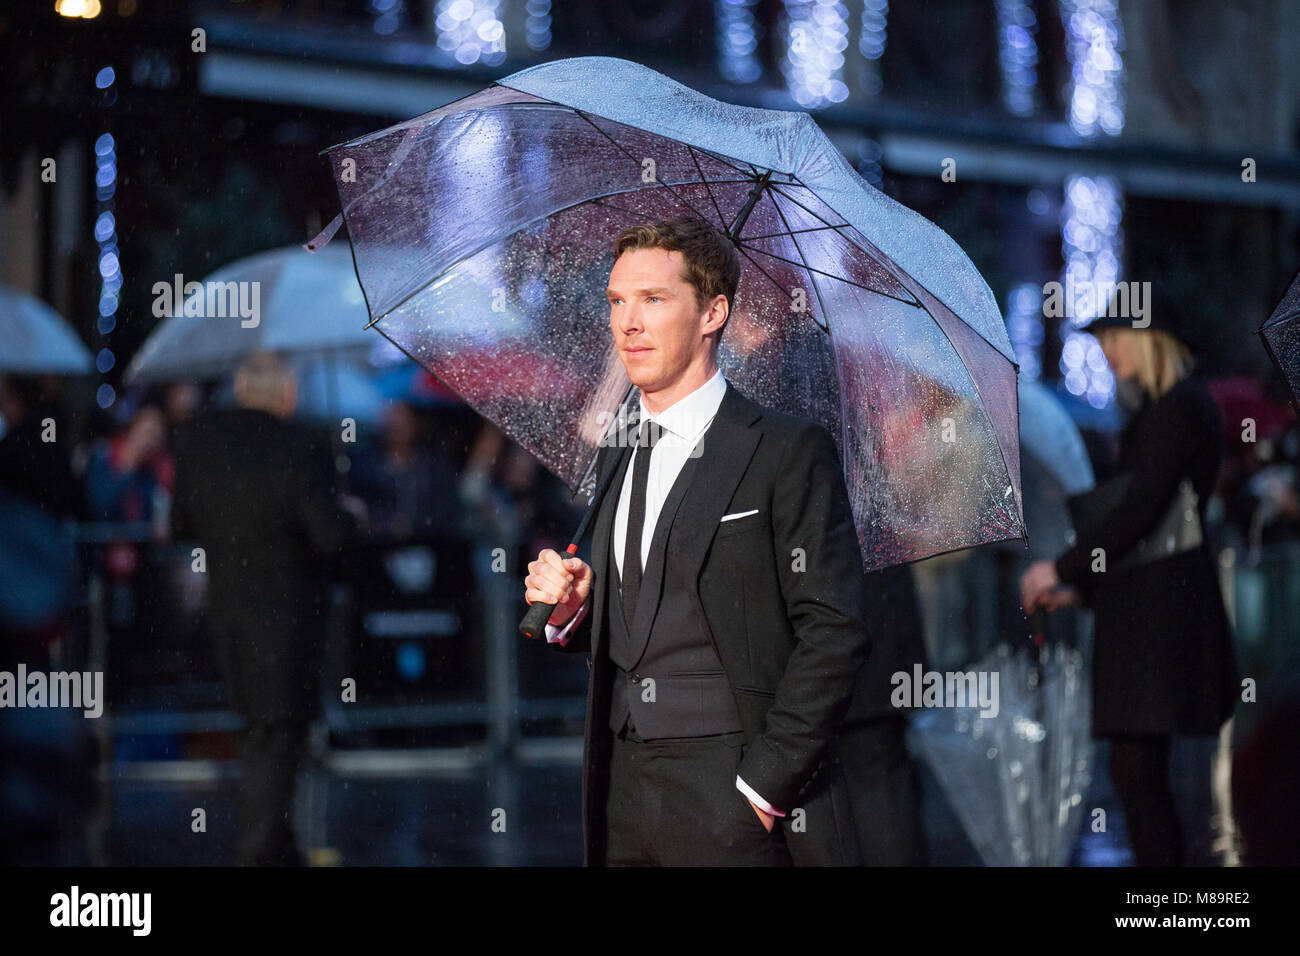 London, UK, 8 octobre 2014, Benedict Cumberbatch, 'l'Imitation Game' soirée d'ouverture du gala BFI London Film Festival. Mariusz Goslicki/Alamy Banque D'Images